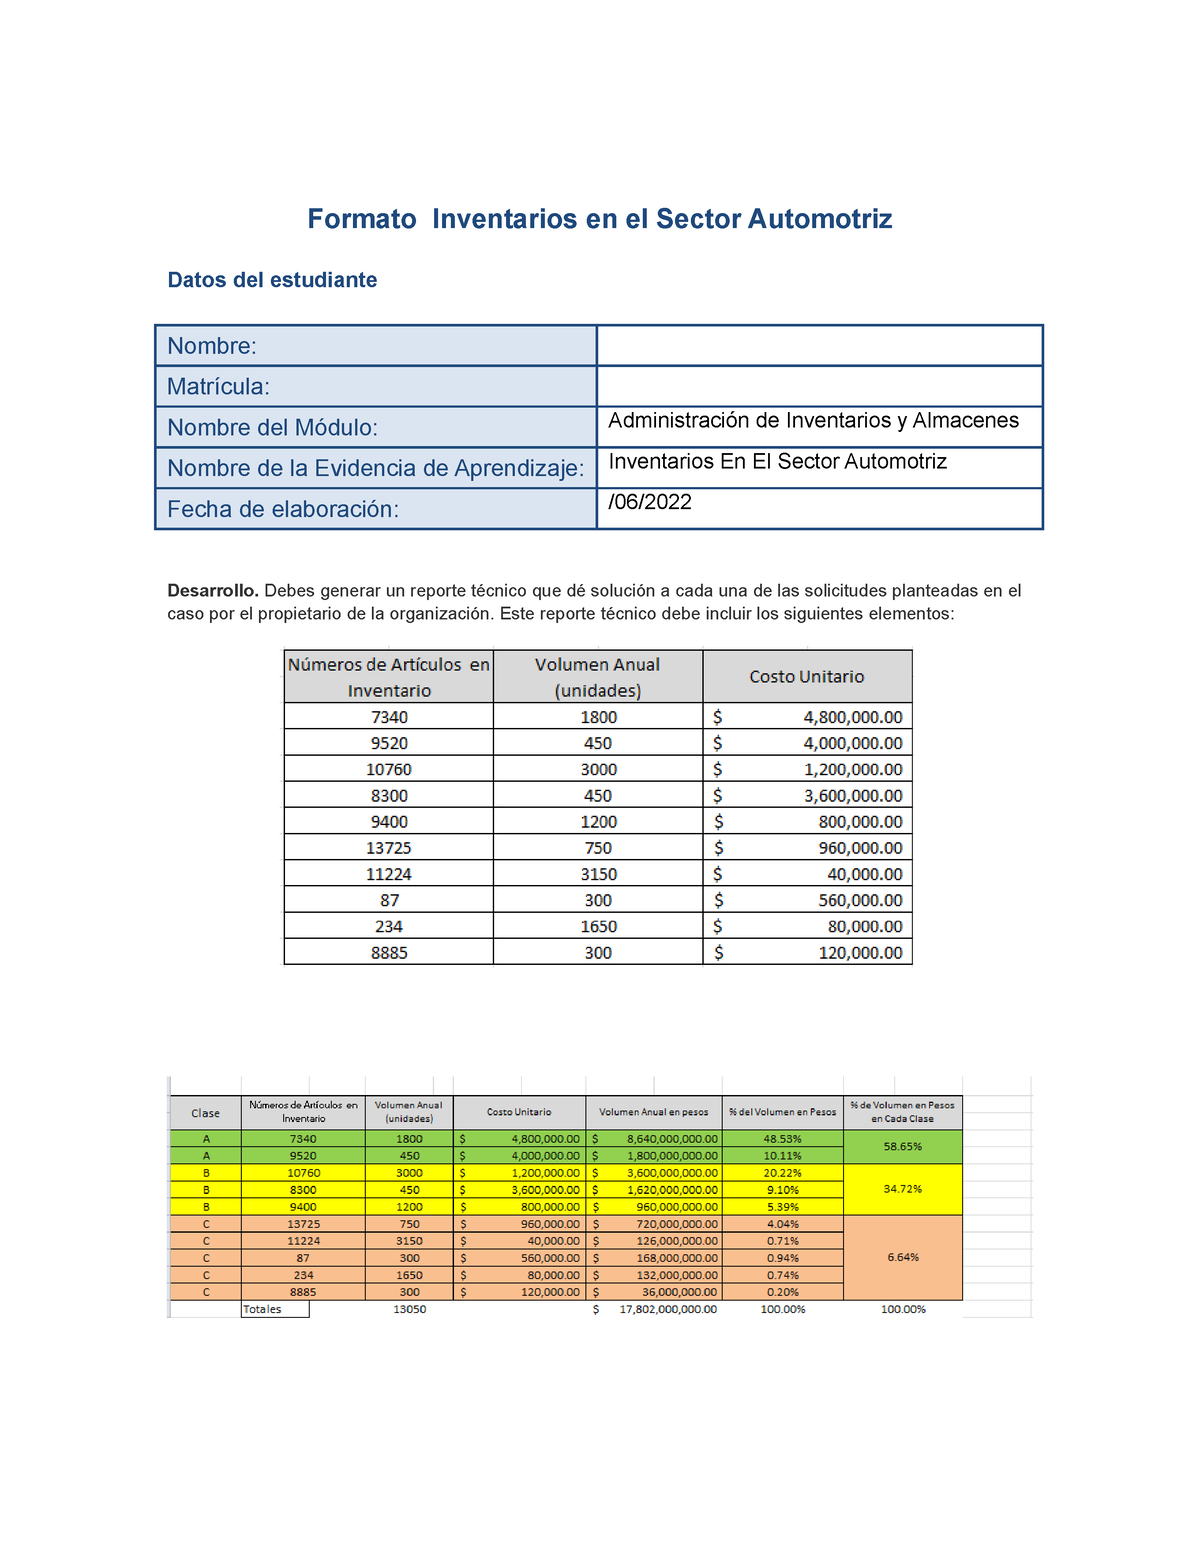 Inventario En El Sector Automotriz Ea 2 Formato Inventarios En El Sector Automotriz Datos Del 7360